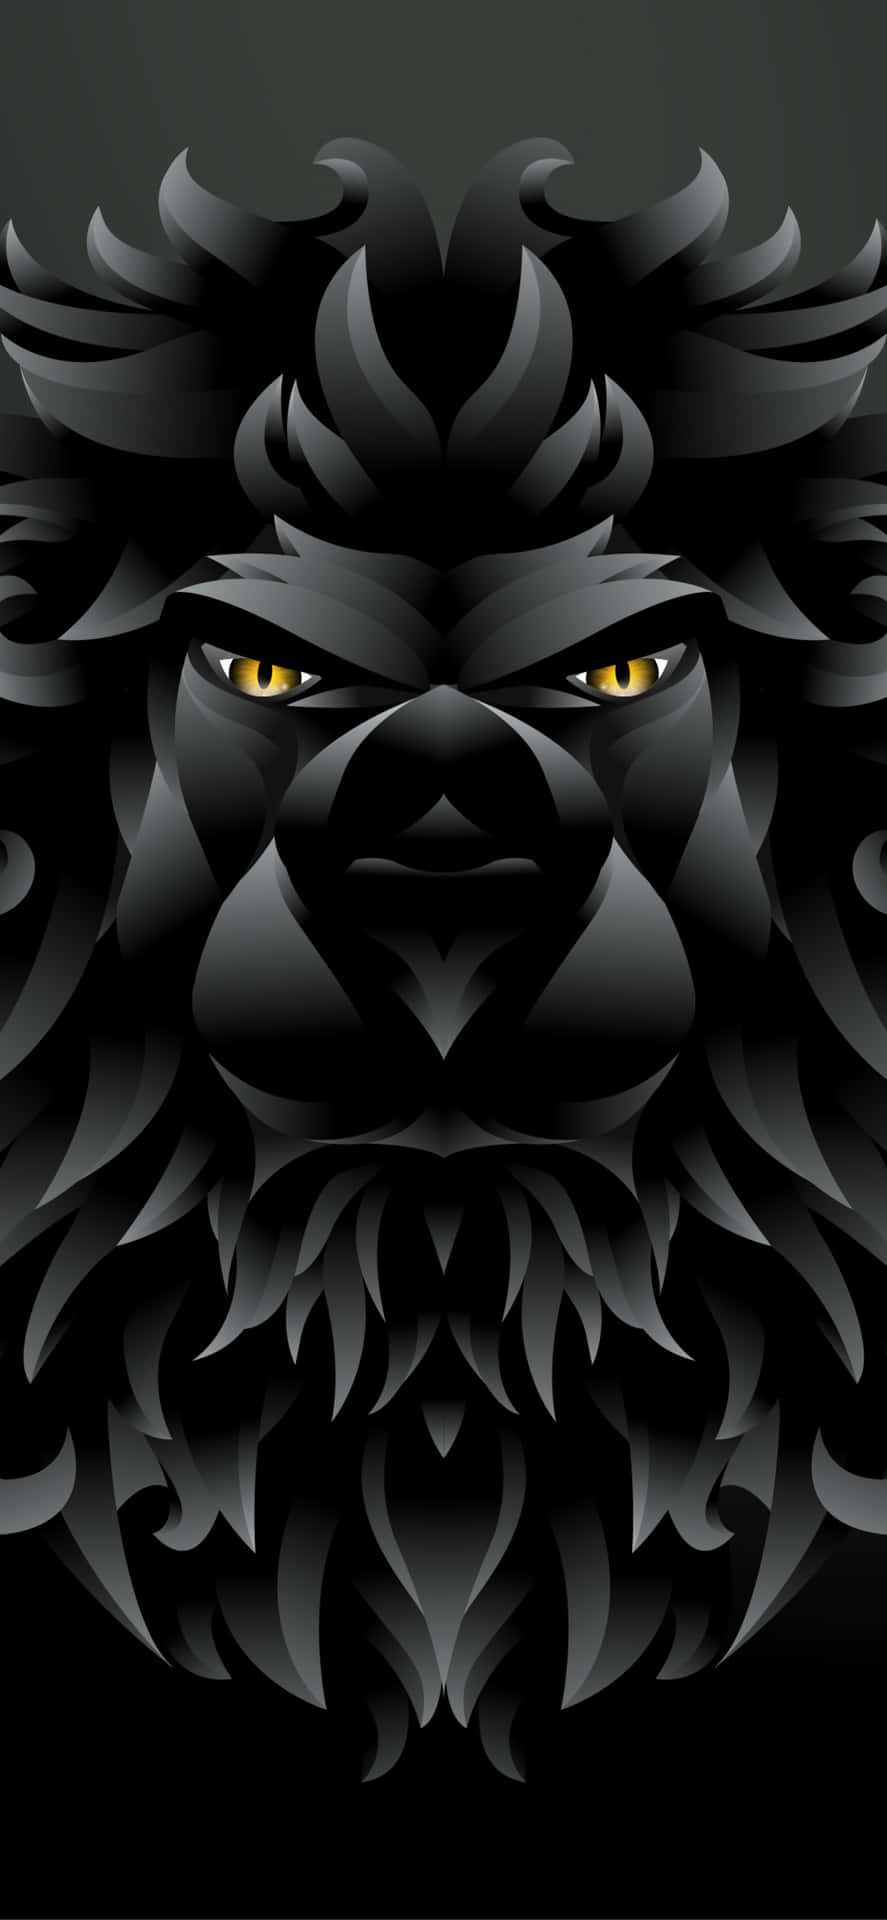 Majestætisk og kongelig - En sort og hvid løve Wallpaper